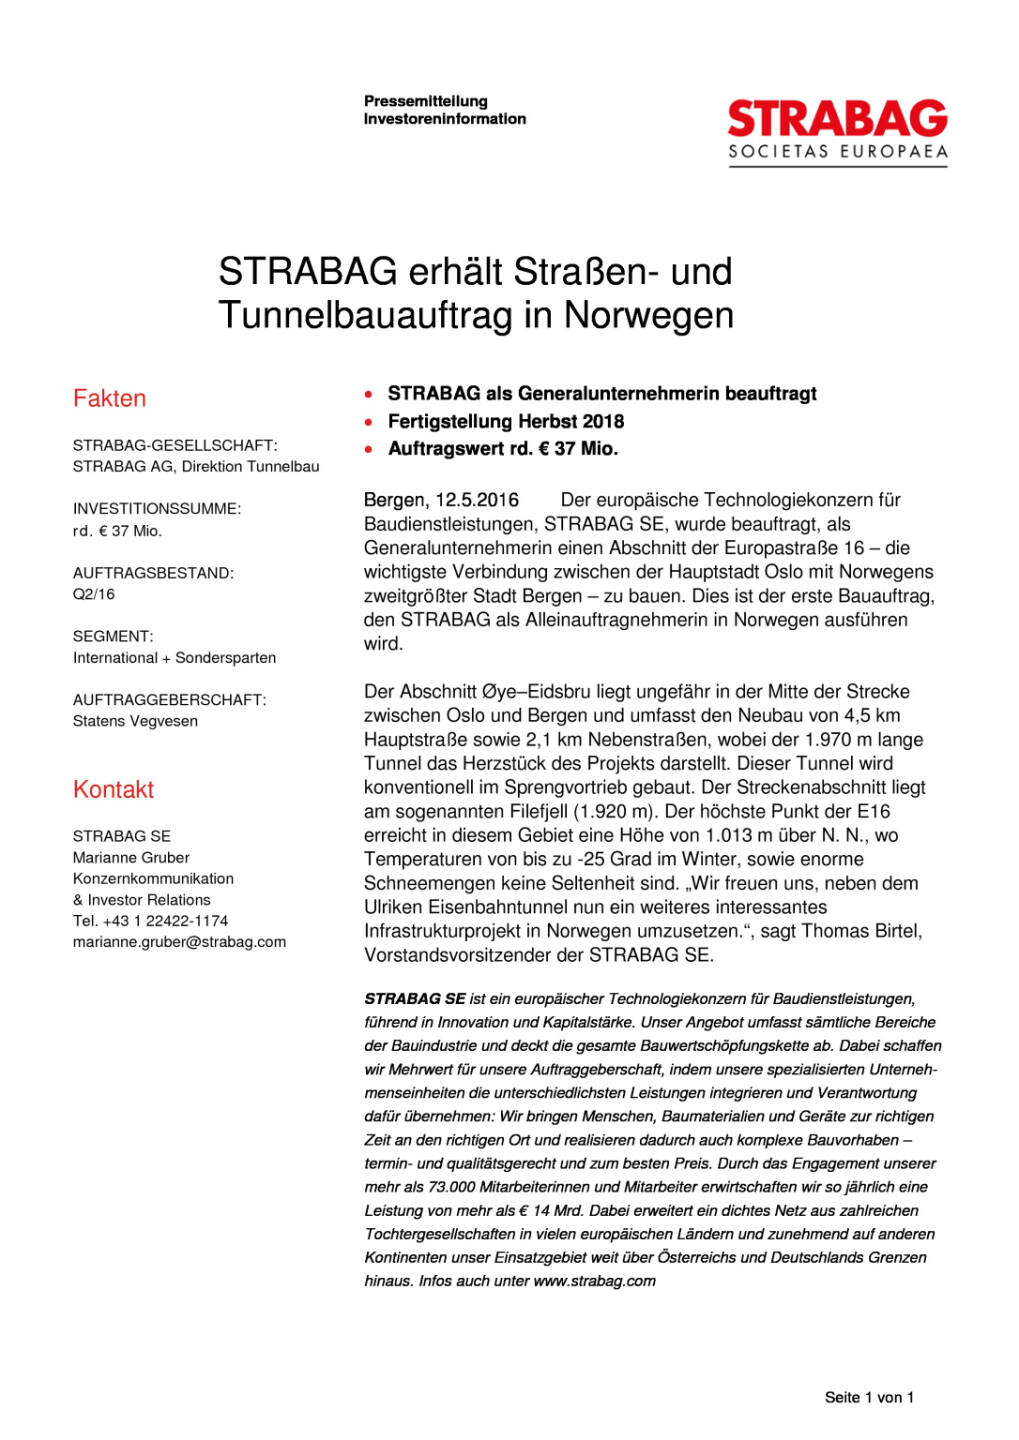 Strabag: Straßen- und Tunnelbauauftrag in Norwegen, Seite 1/1, komplettes Dokument unter http://boerse-social.com/static/uploads/file_1052_strabag_strassen-_und_tunnelbauauftrag_in_norwegen.pdf